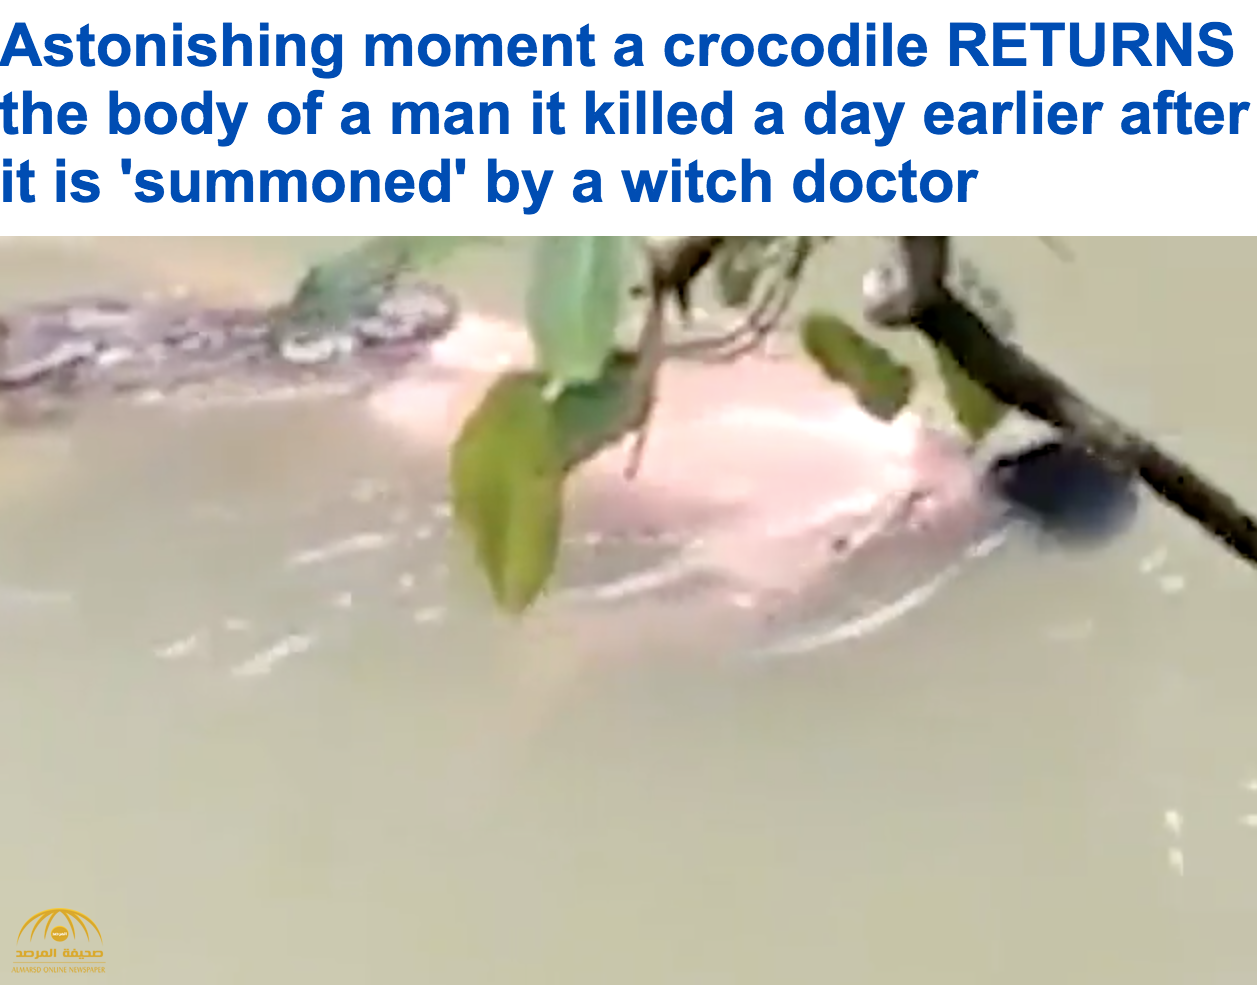 شاهد بالفيديو: تمساح يعيد "جثة" رجل بعد استجابته لتعويذة ساحر إندونيسي!